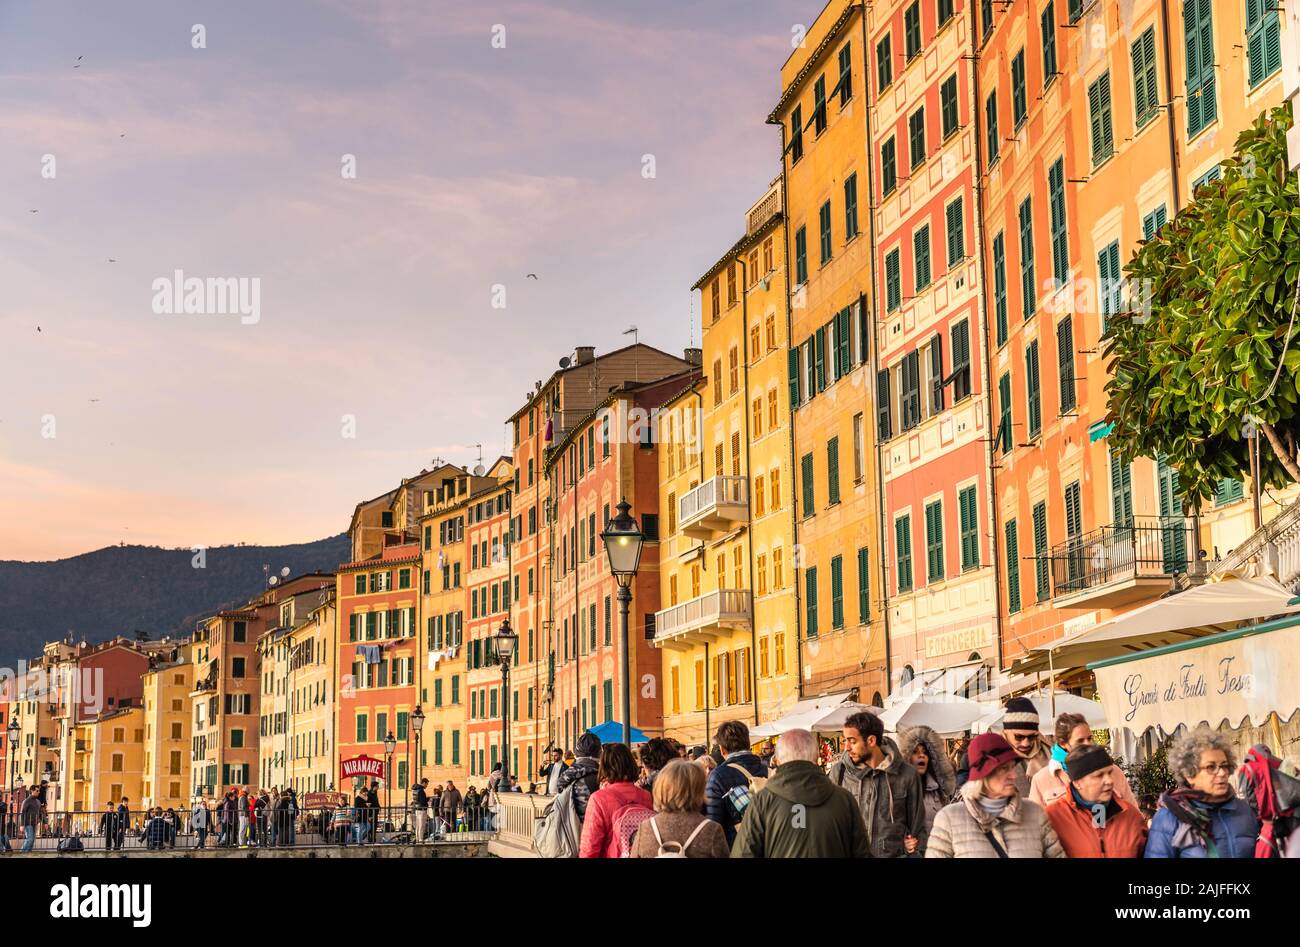 Camogli, Génova, Italia: Hermosa vista al atardecer de la aldea costera italiana, casas tradicionales de Liguria con fachadas multicolores, gente paseando Foto de stock